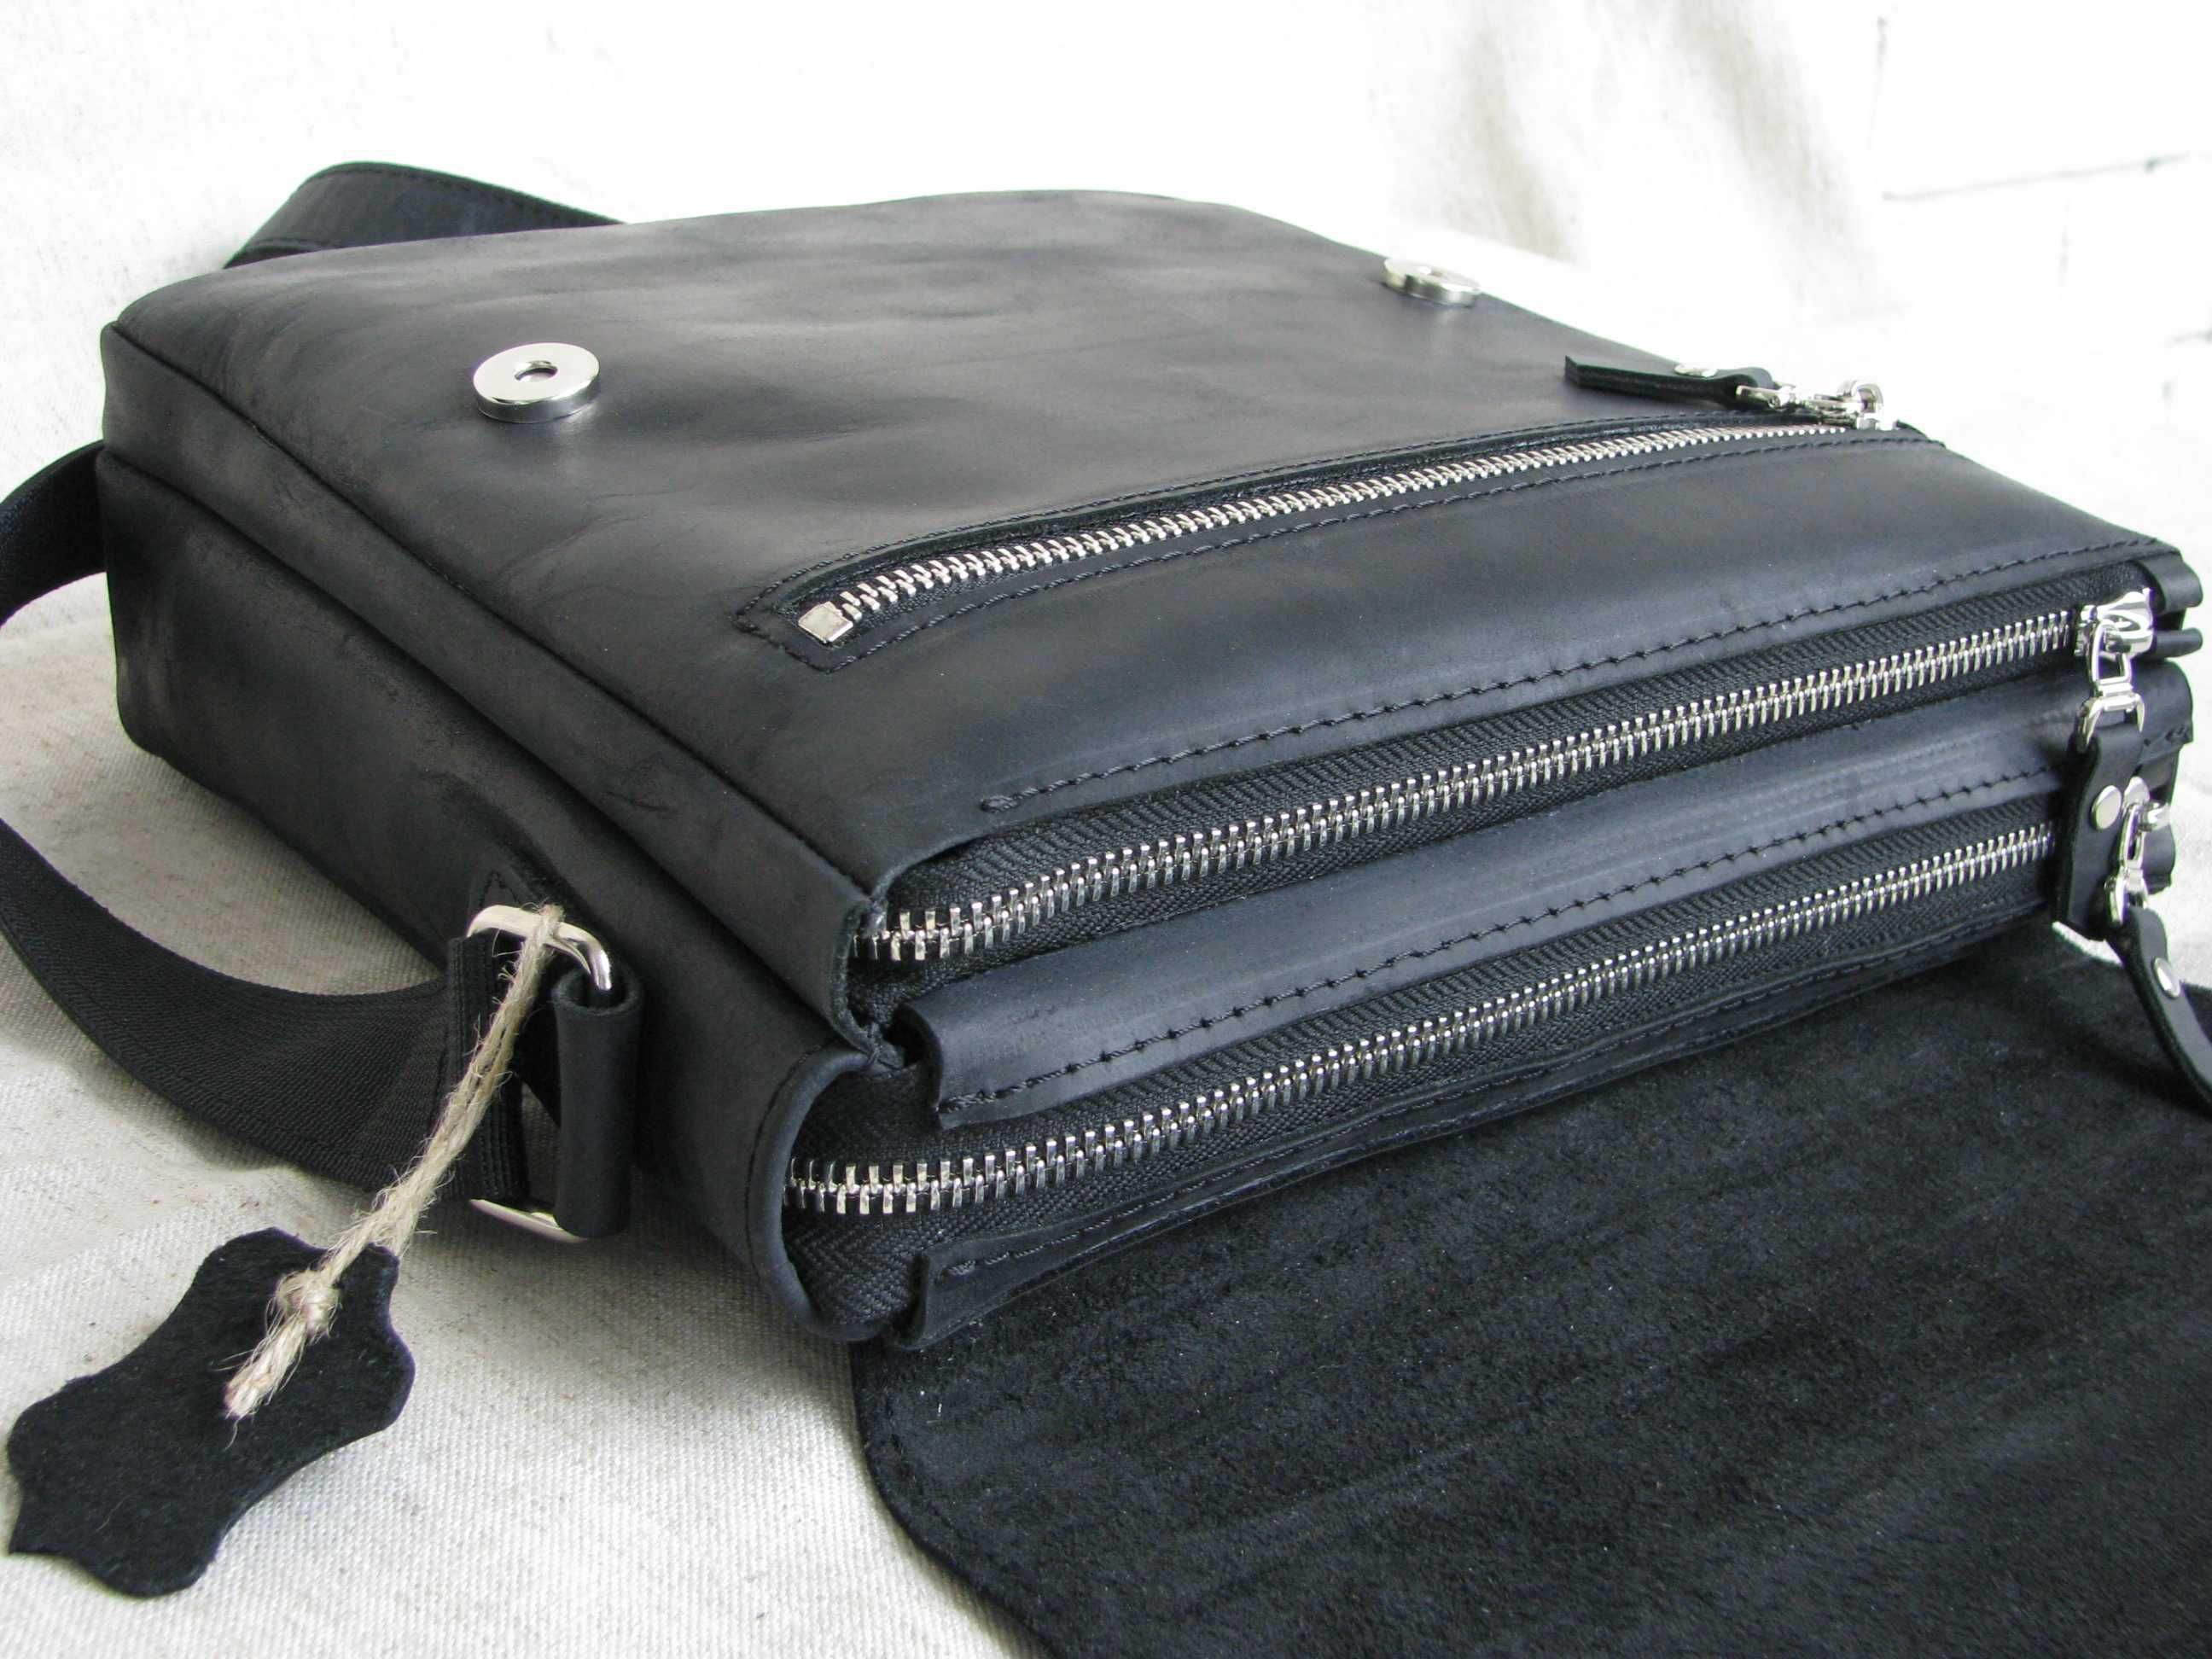 Мужская вместительная кожаная сумка GS МА 002 черная